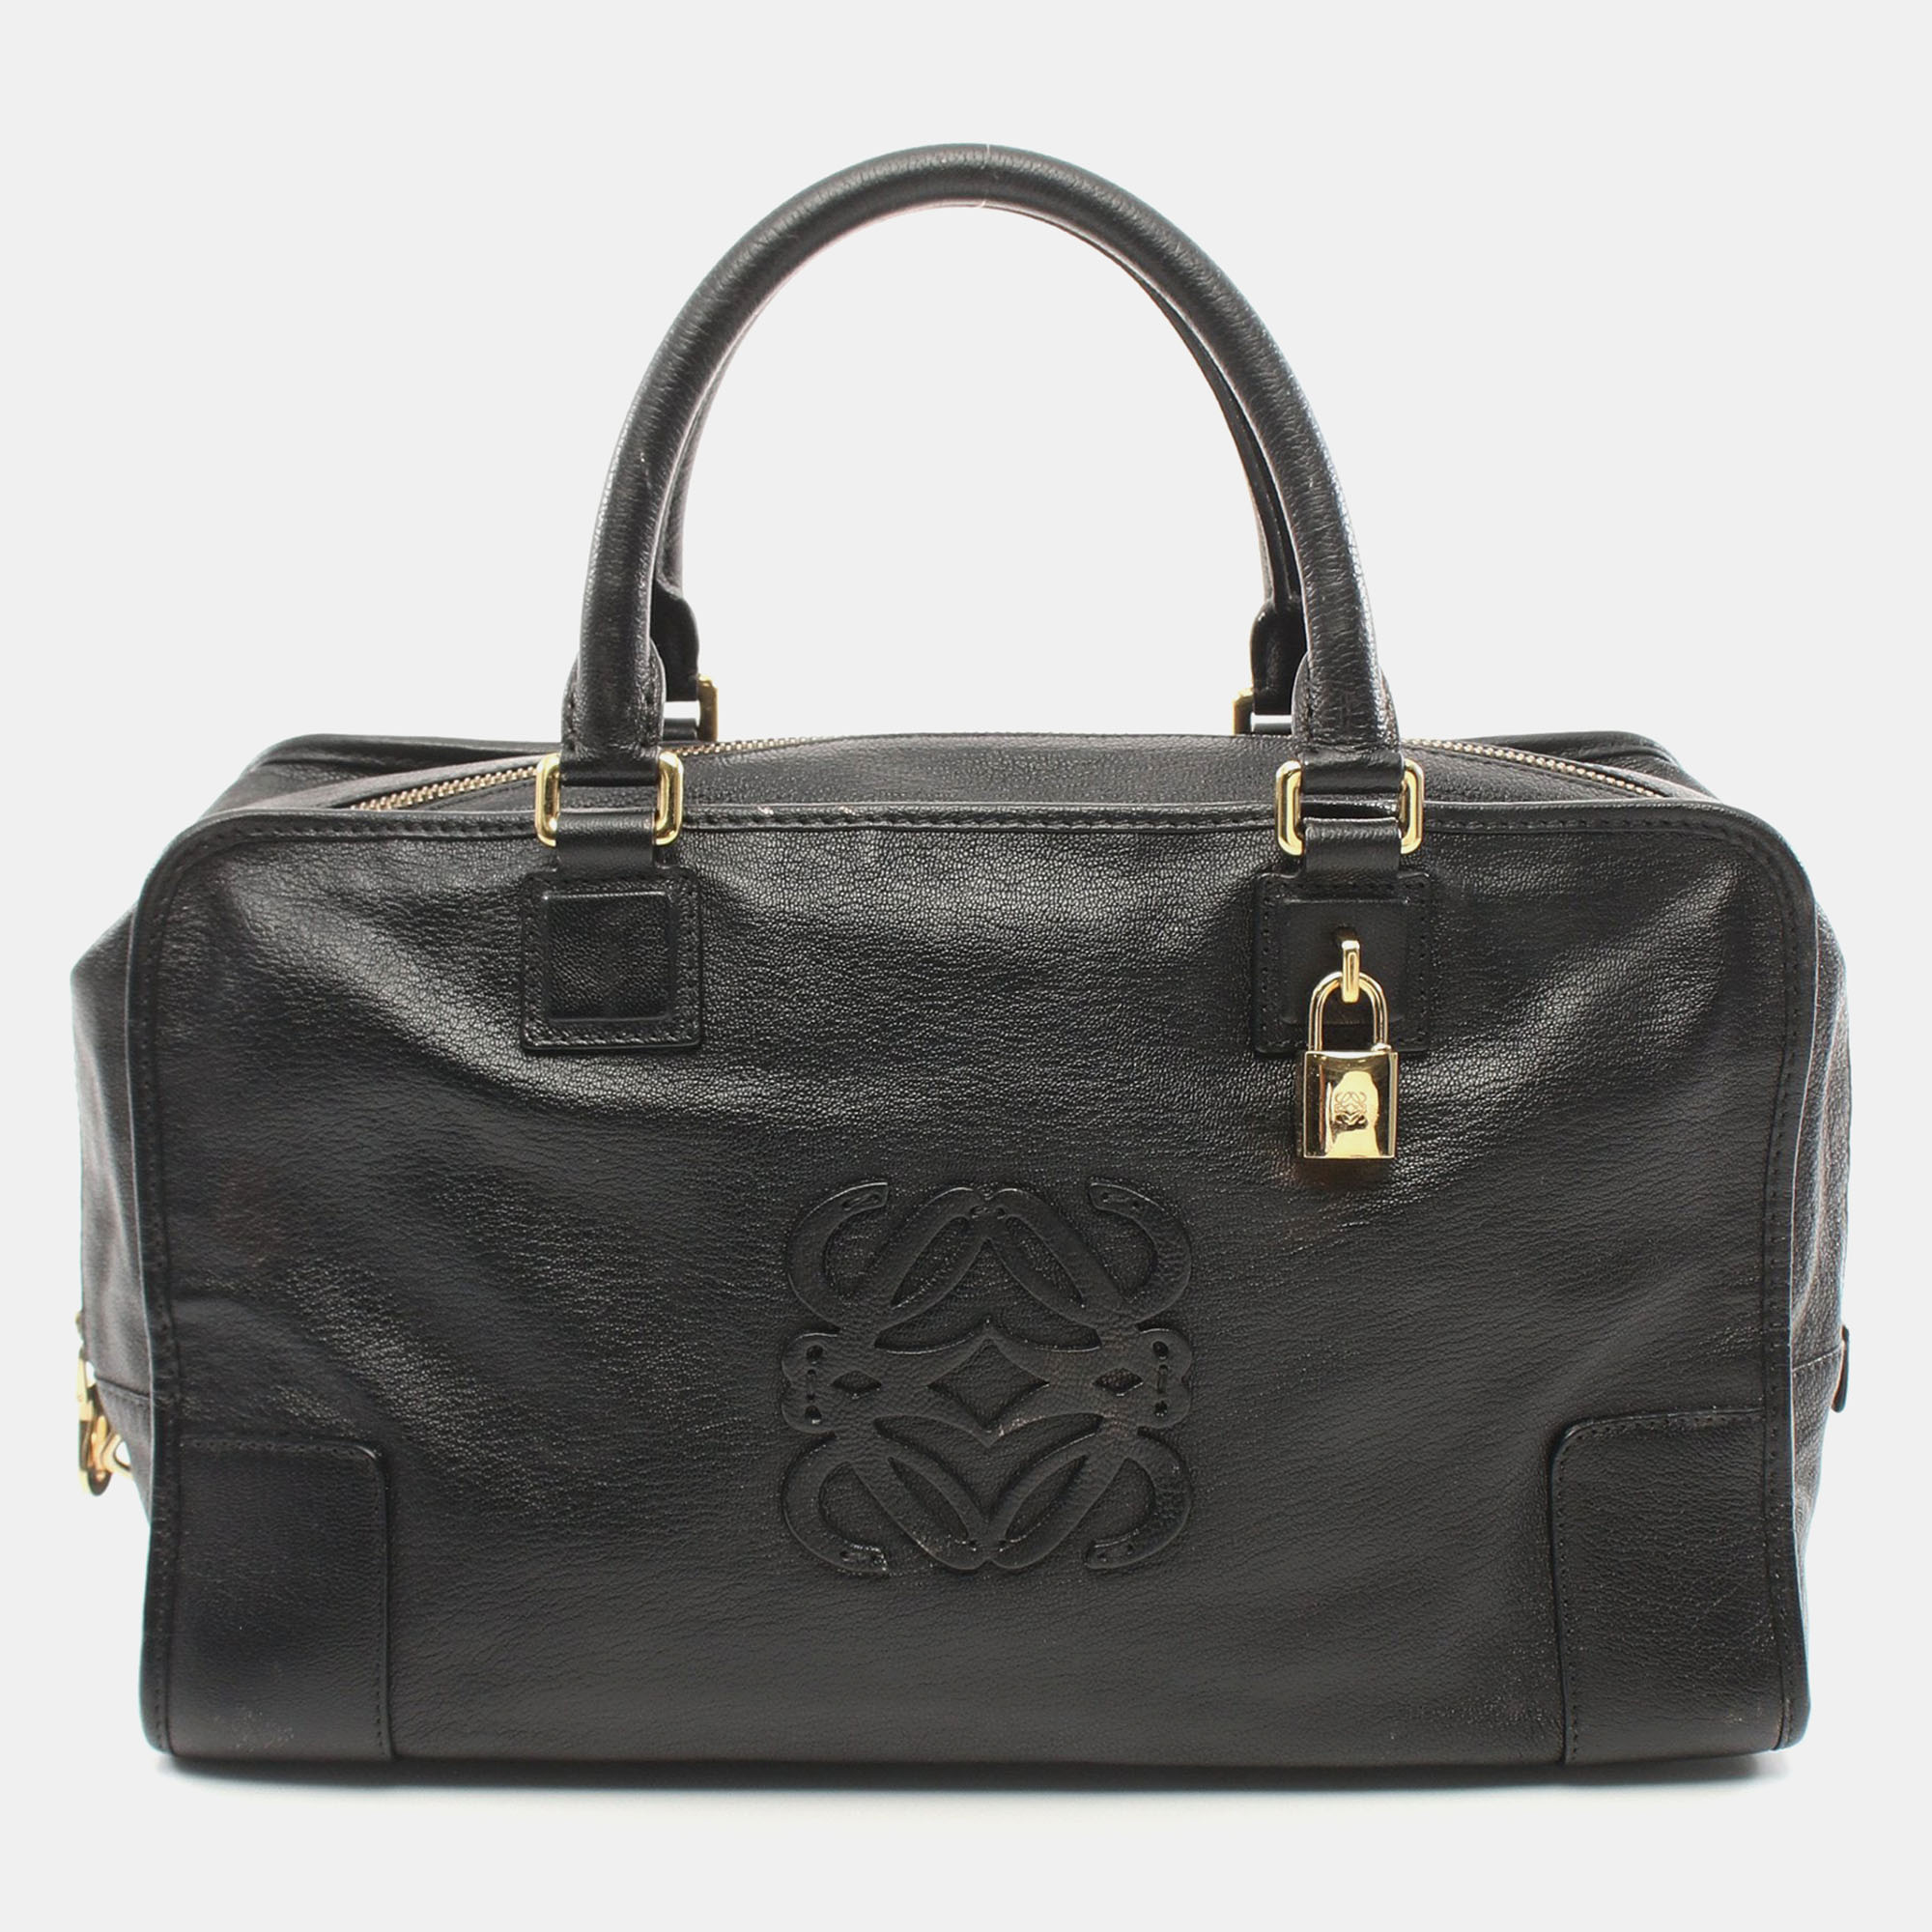 

Loewe Amazona36 Handbag Leather Black